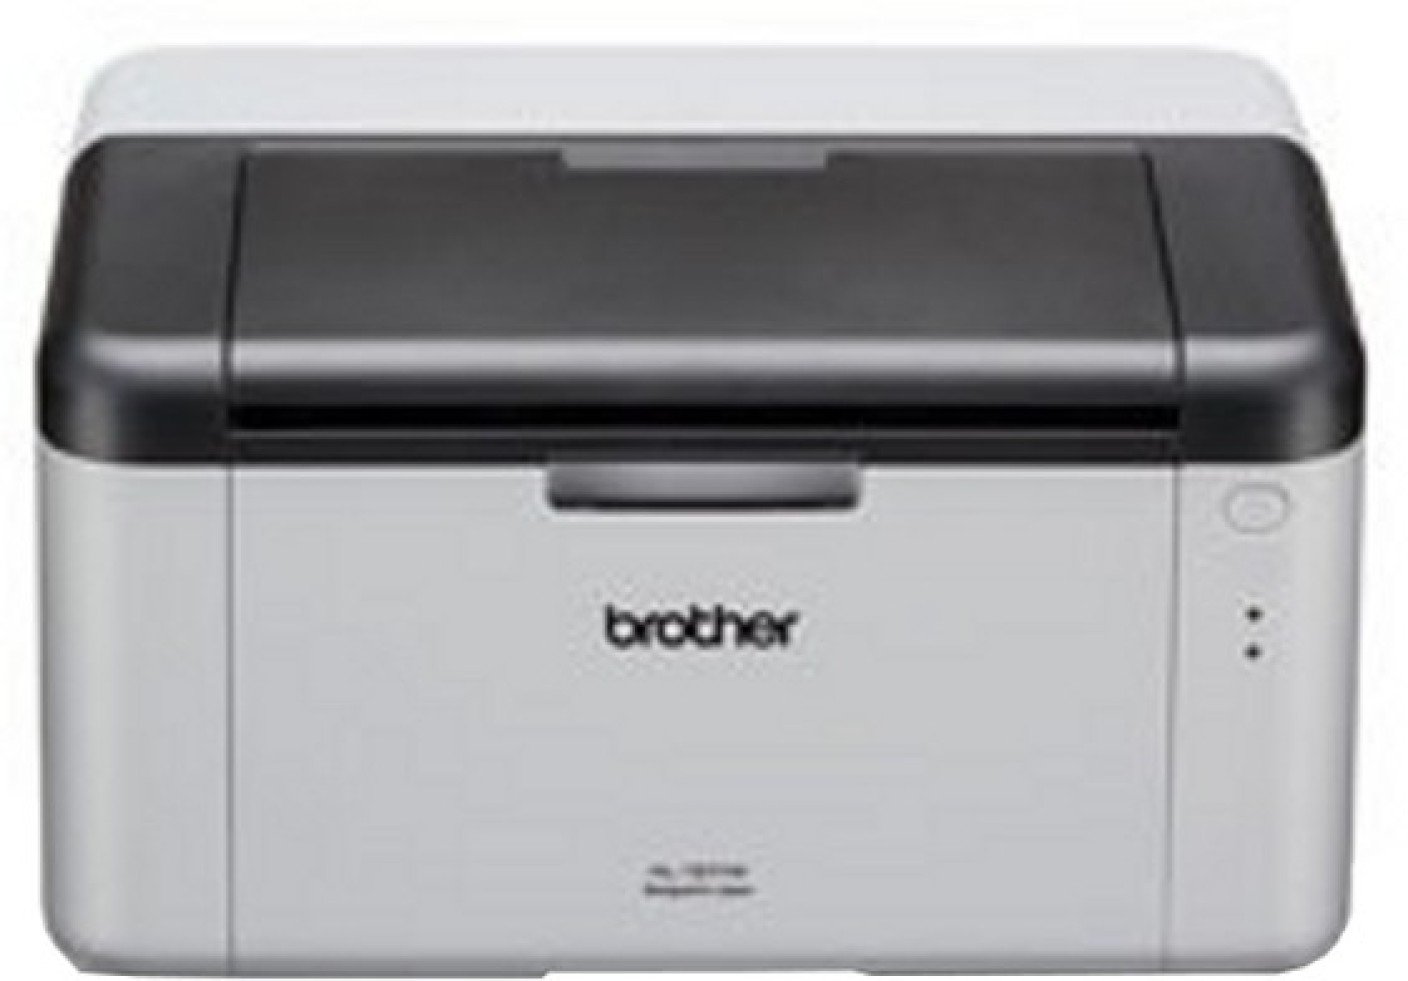 Brother hl 21 printer manual